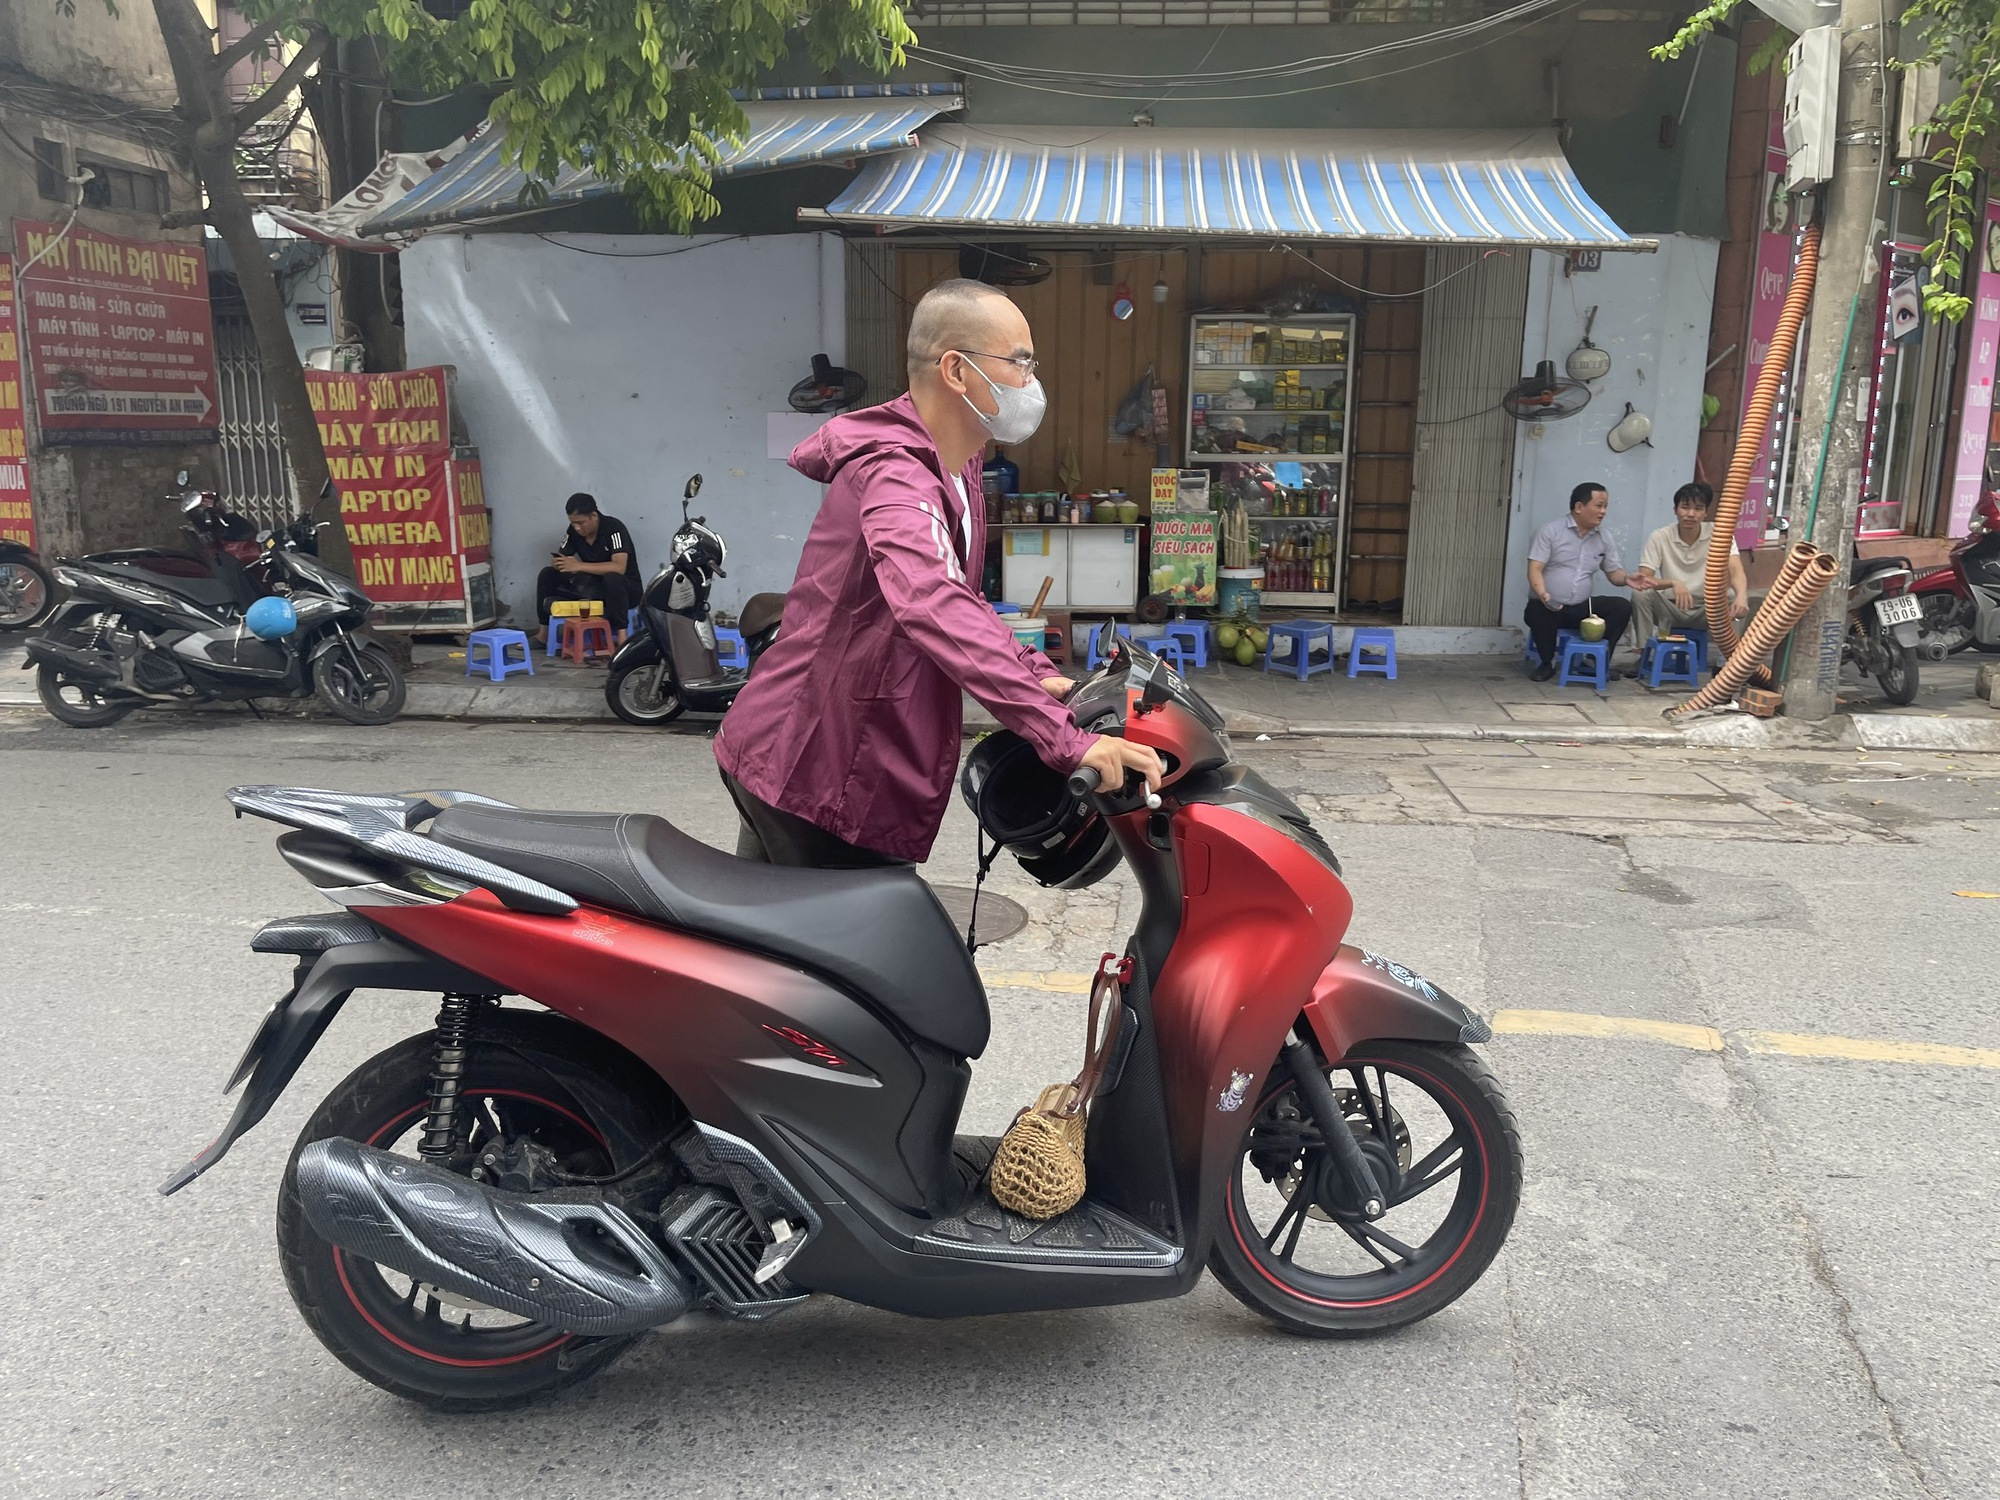 Hà Nội: Kỳ lạ con phố  ô tô, xe máy bỗng không mở được khóa thông minh, nhiều người dân hì hục đẩy xe - Ảnh 3.